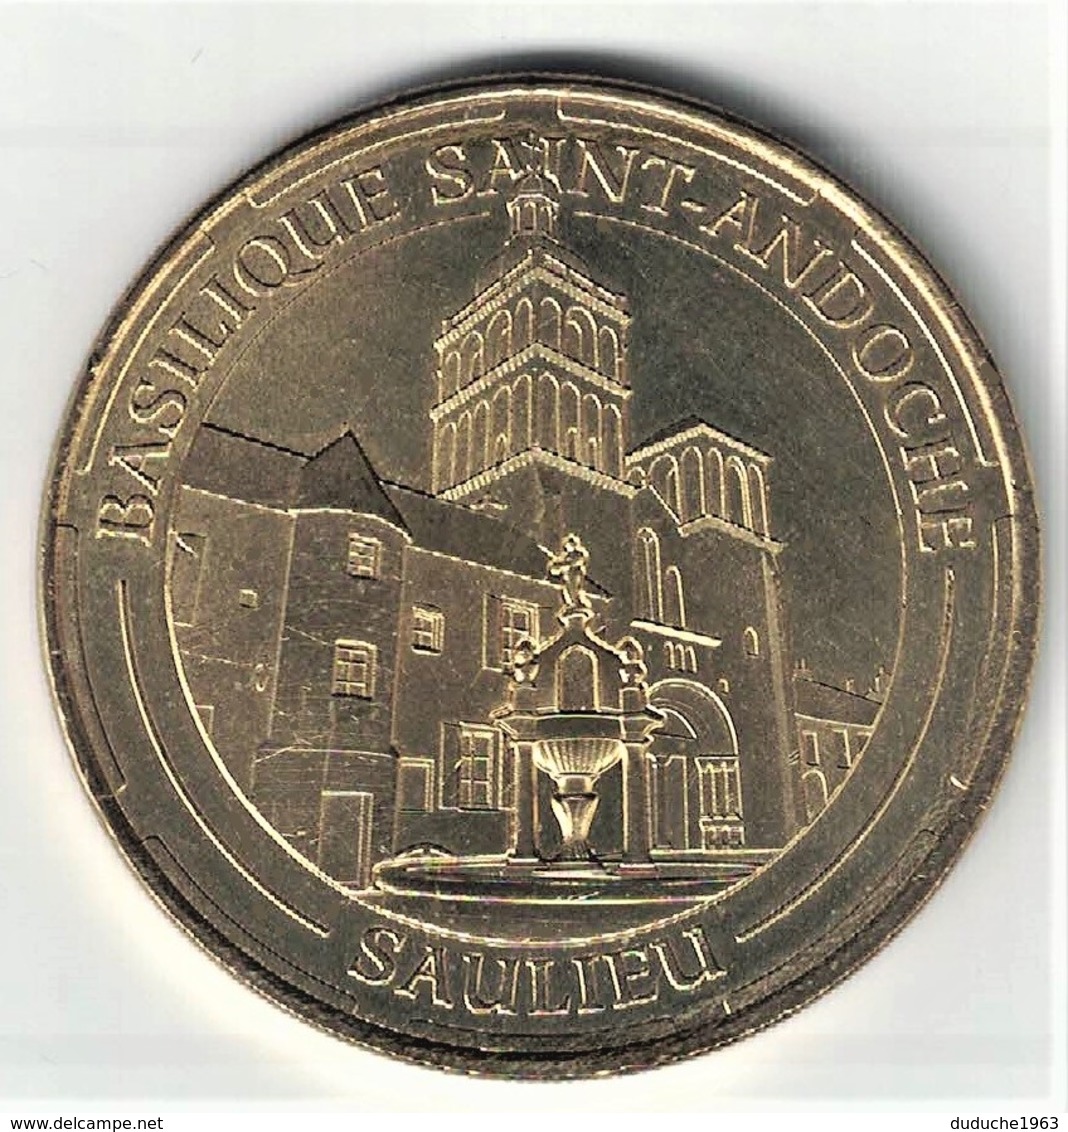 Monnaie De Paris 21.Saulieu - Basilique Saint Andoche 2014 - 2014